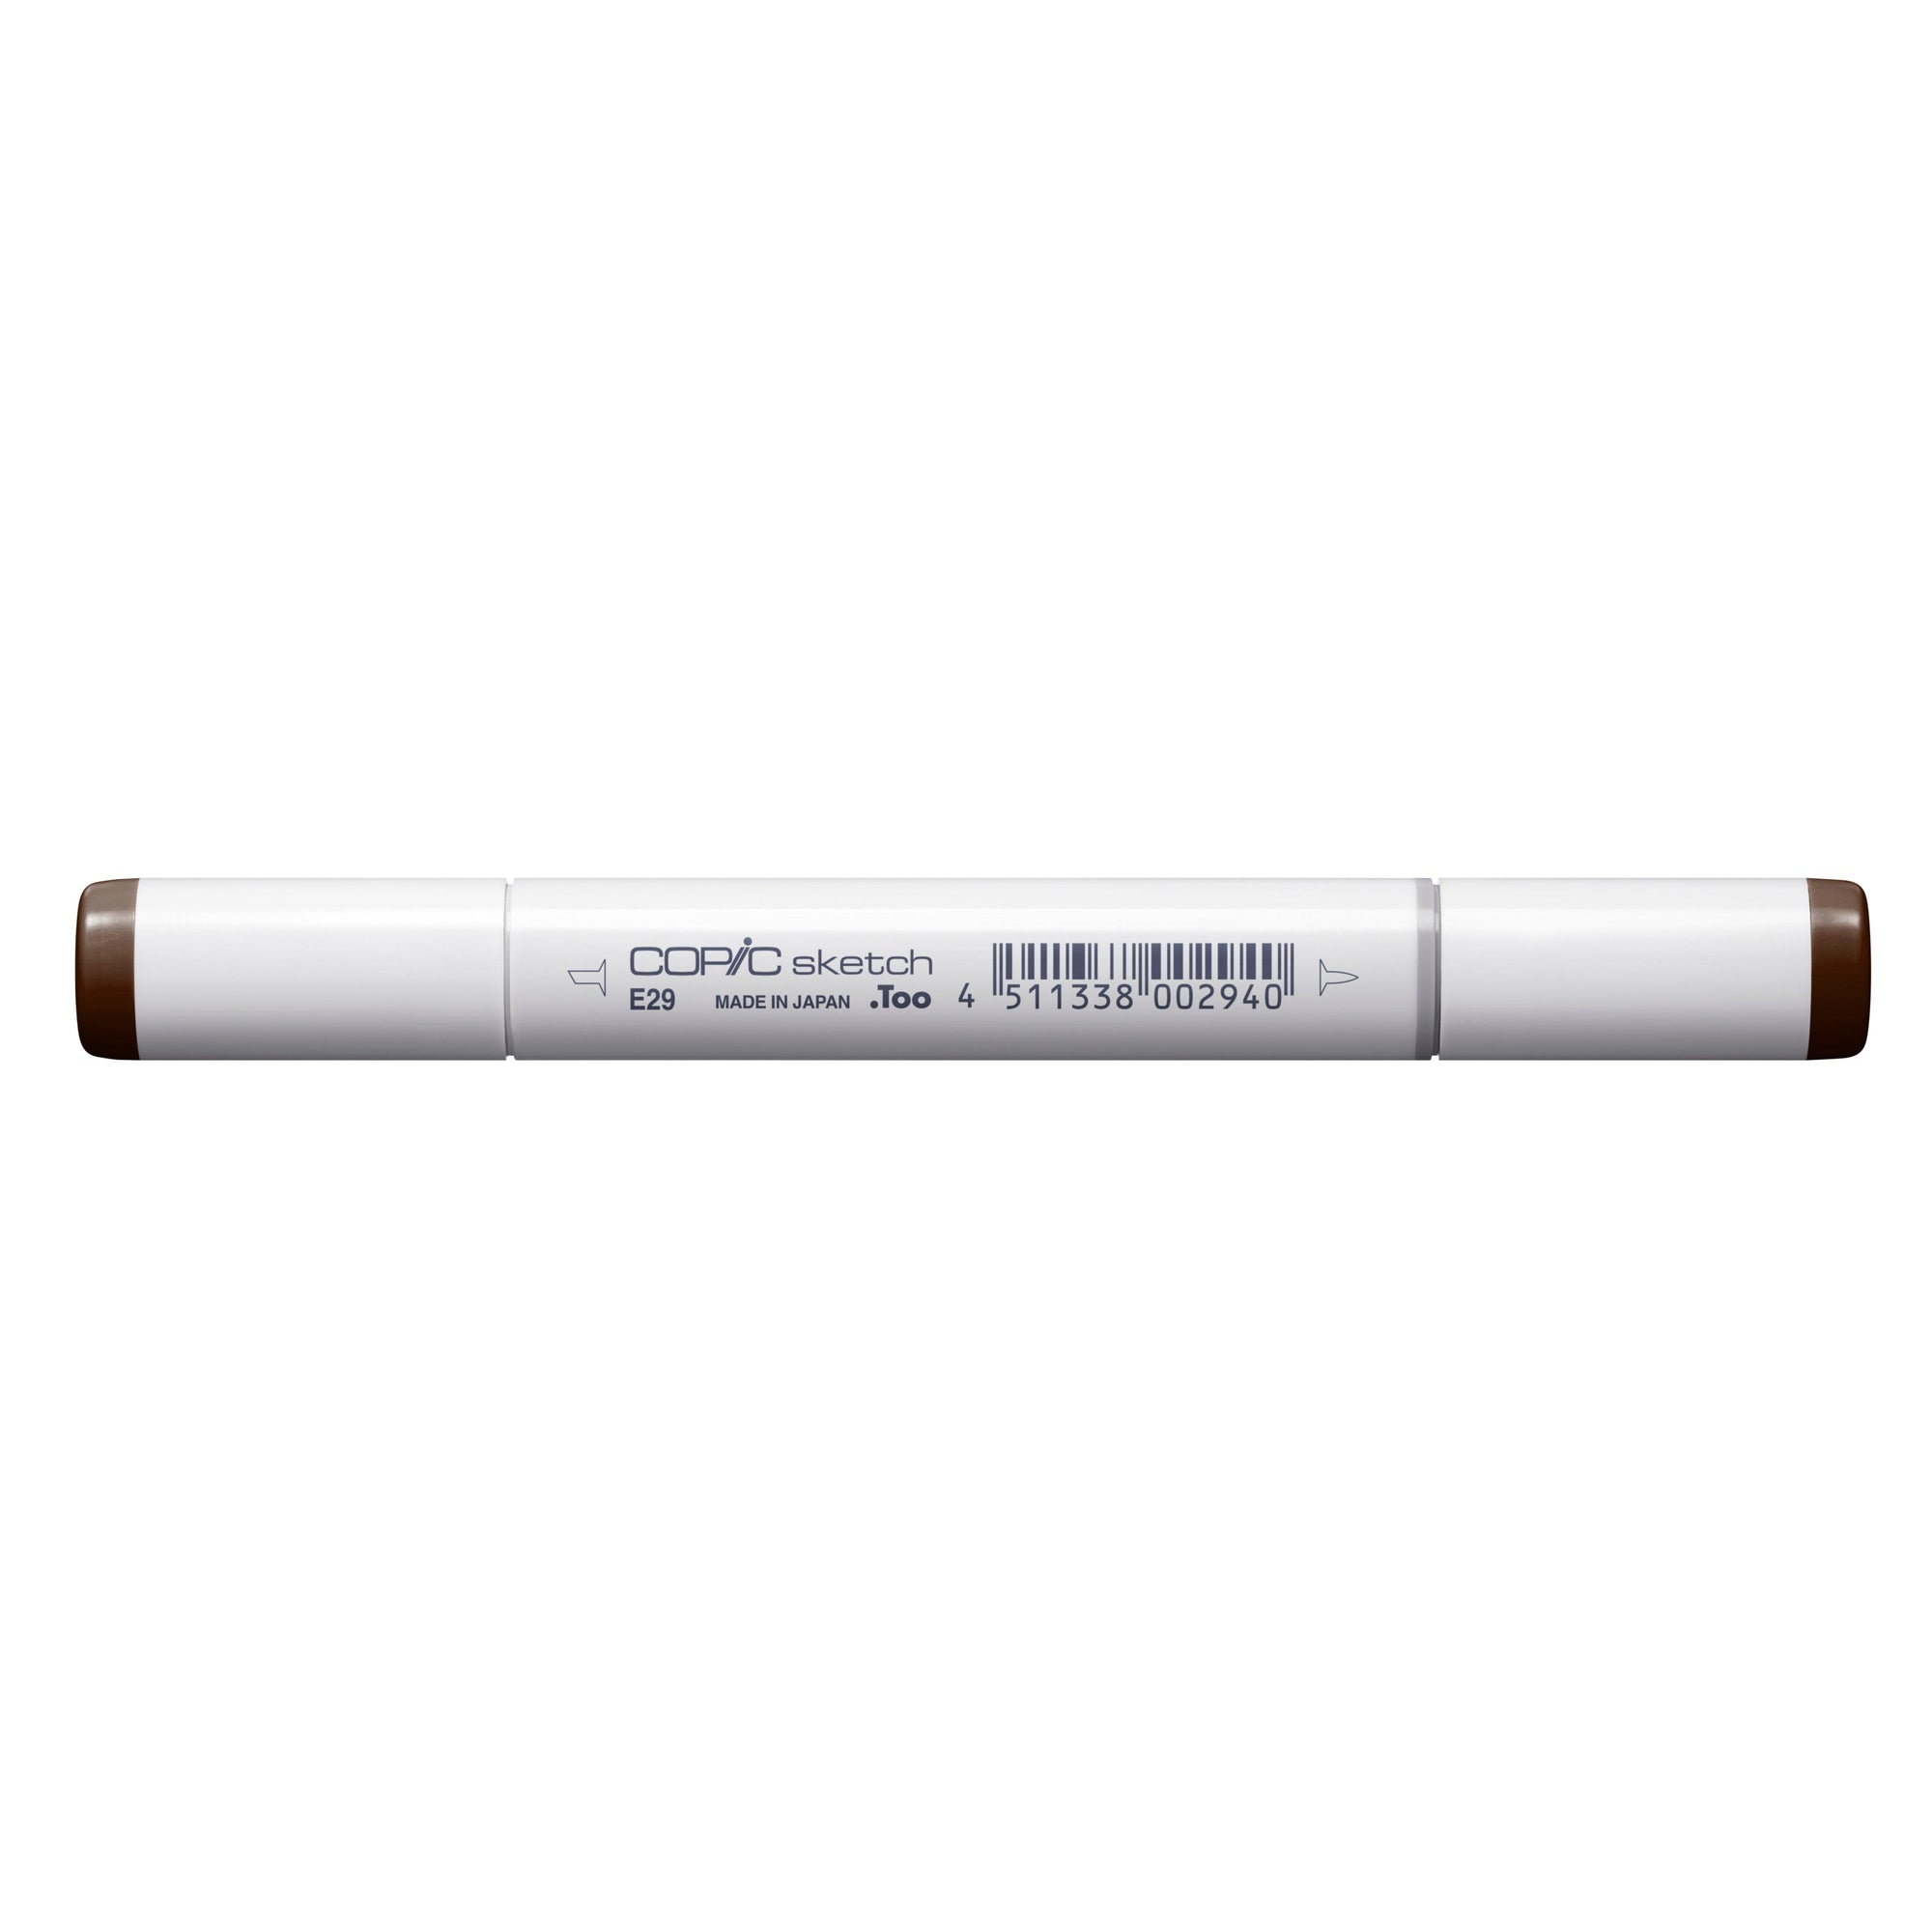 Copic - Sketch Marker - Burnt Umber - E29-ScrapbookPal